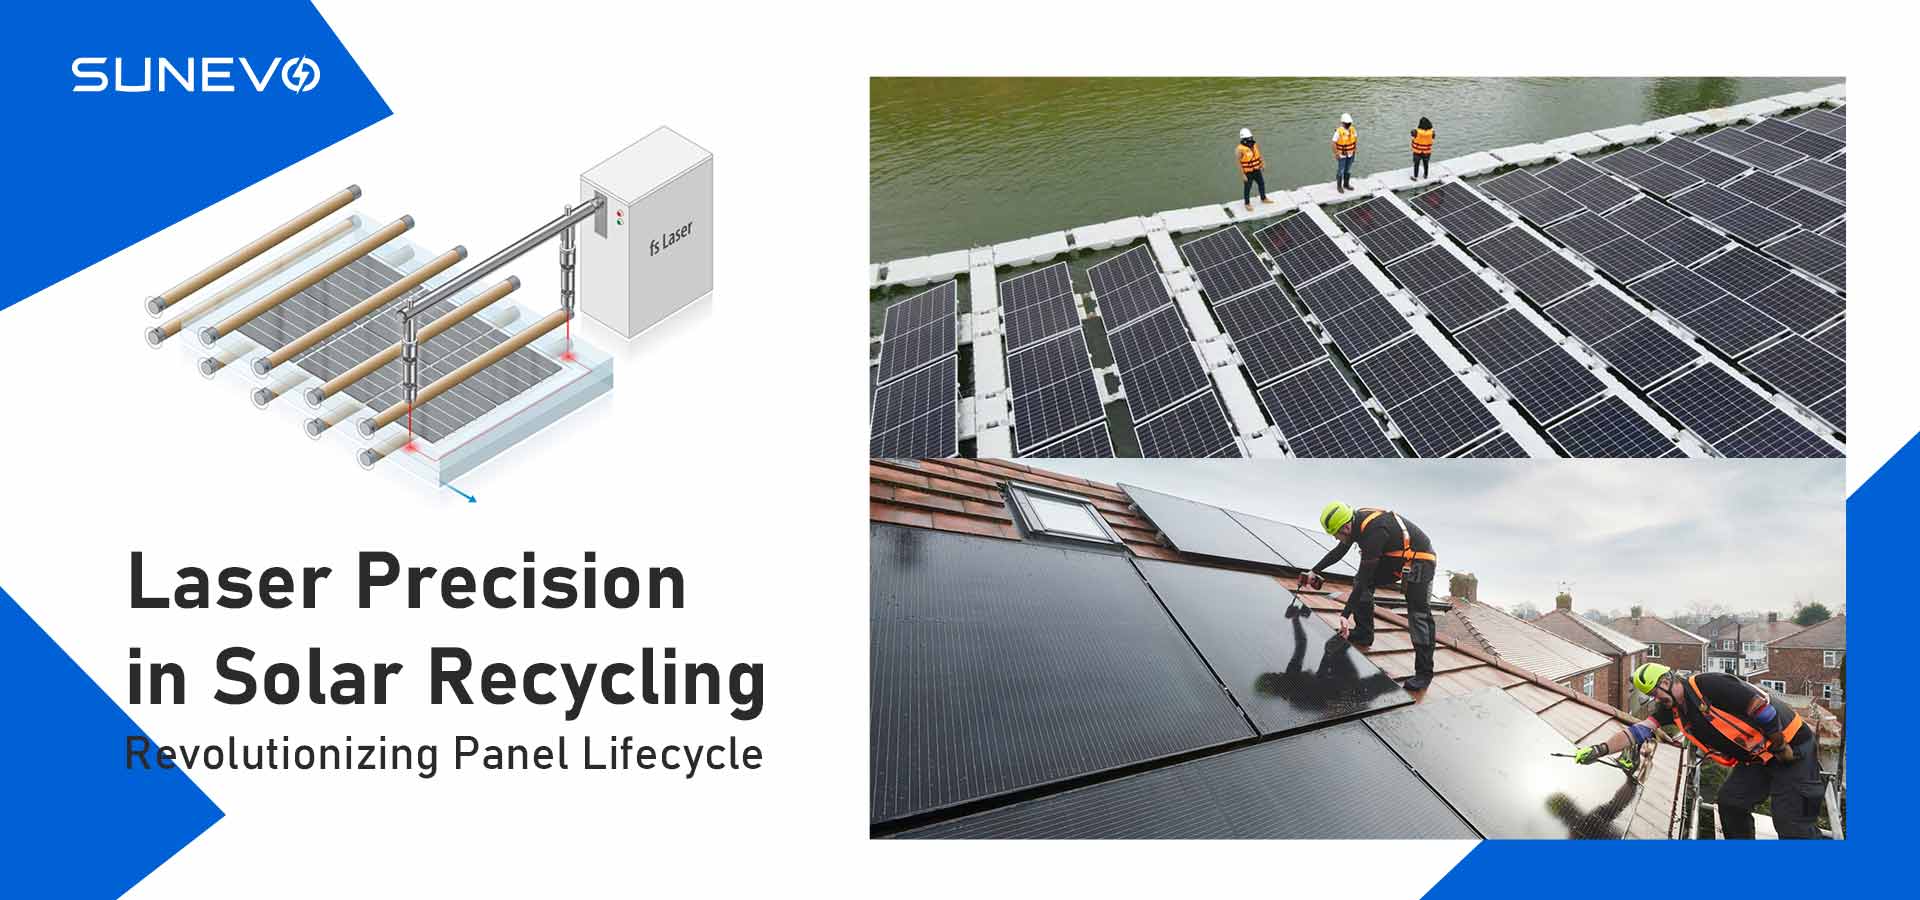 Precisión láser en el reciclaje solar: revolucionando el ciclo de vida de los paneles